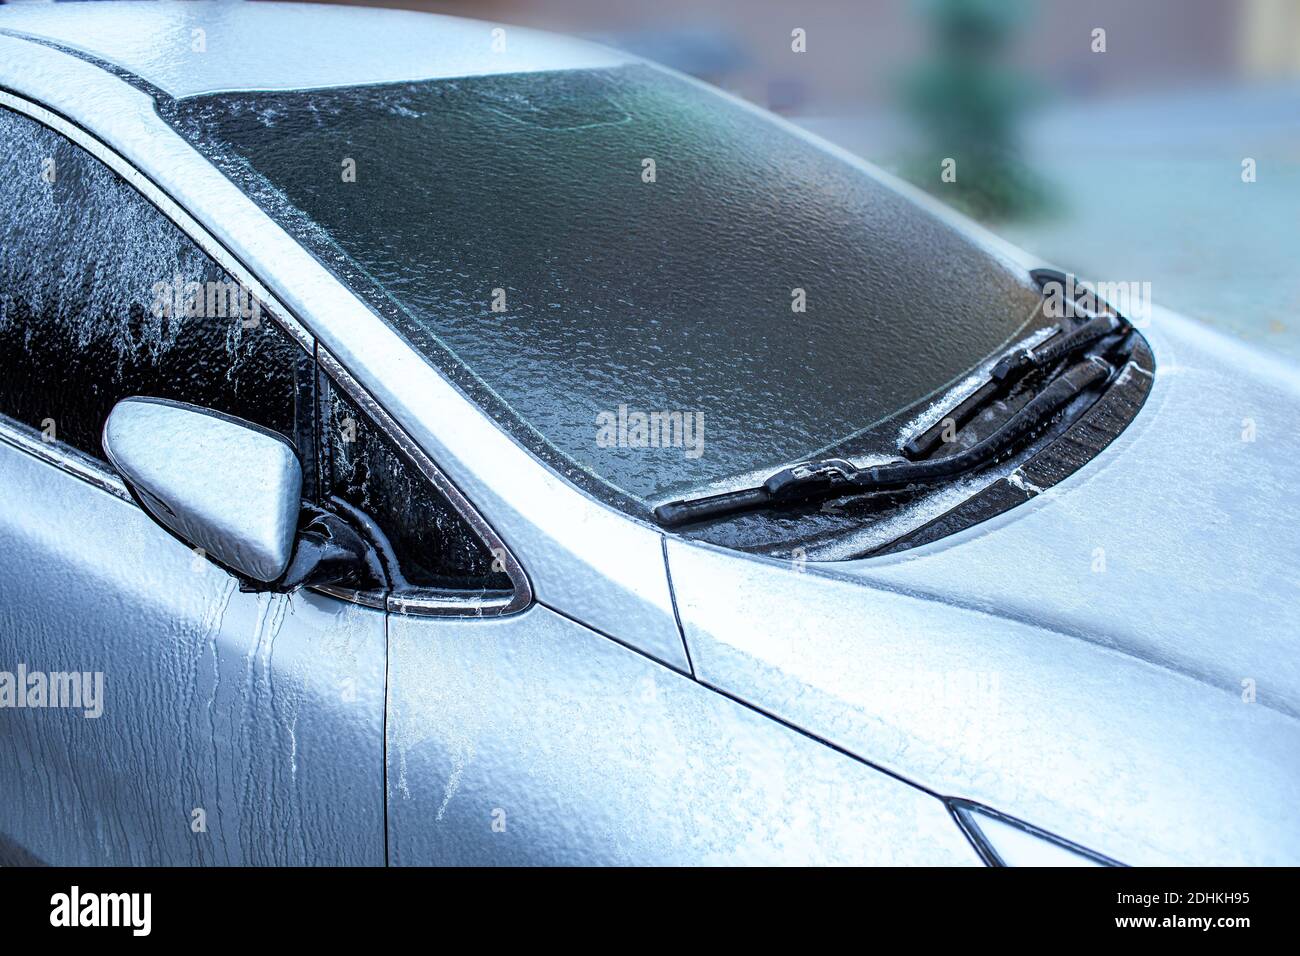 Pluie verglaçante, anomalies de la nature. Glace de pare-brise et essuie-glaces de voiture après une pluie verglaçante. Technique de mise au point douce Banque D'Images